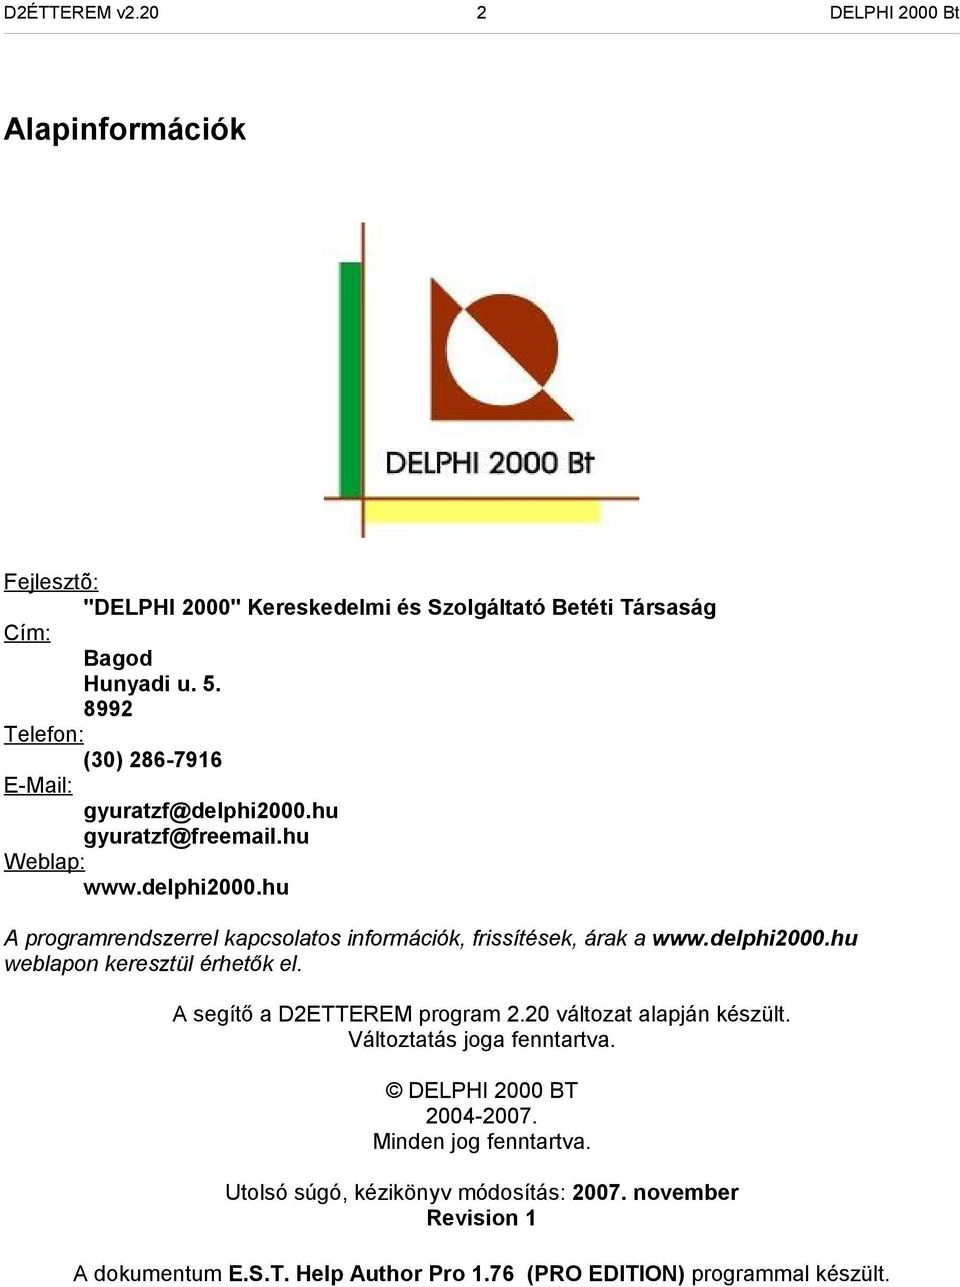 delphi2000.hu weblapon keresztül érhetők el. A segítő a D2ETTEREM program 2.20 változat alapján készült. Változtatás joga fenntartva. DELPHI 2000 BT 2004-2007.